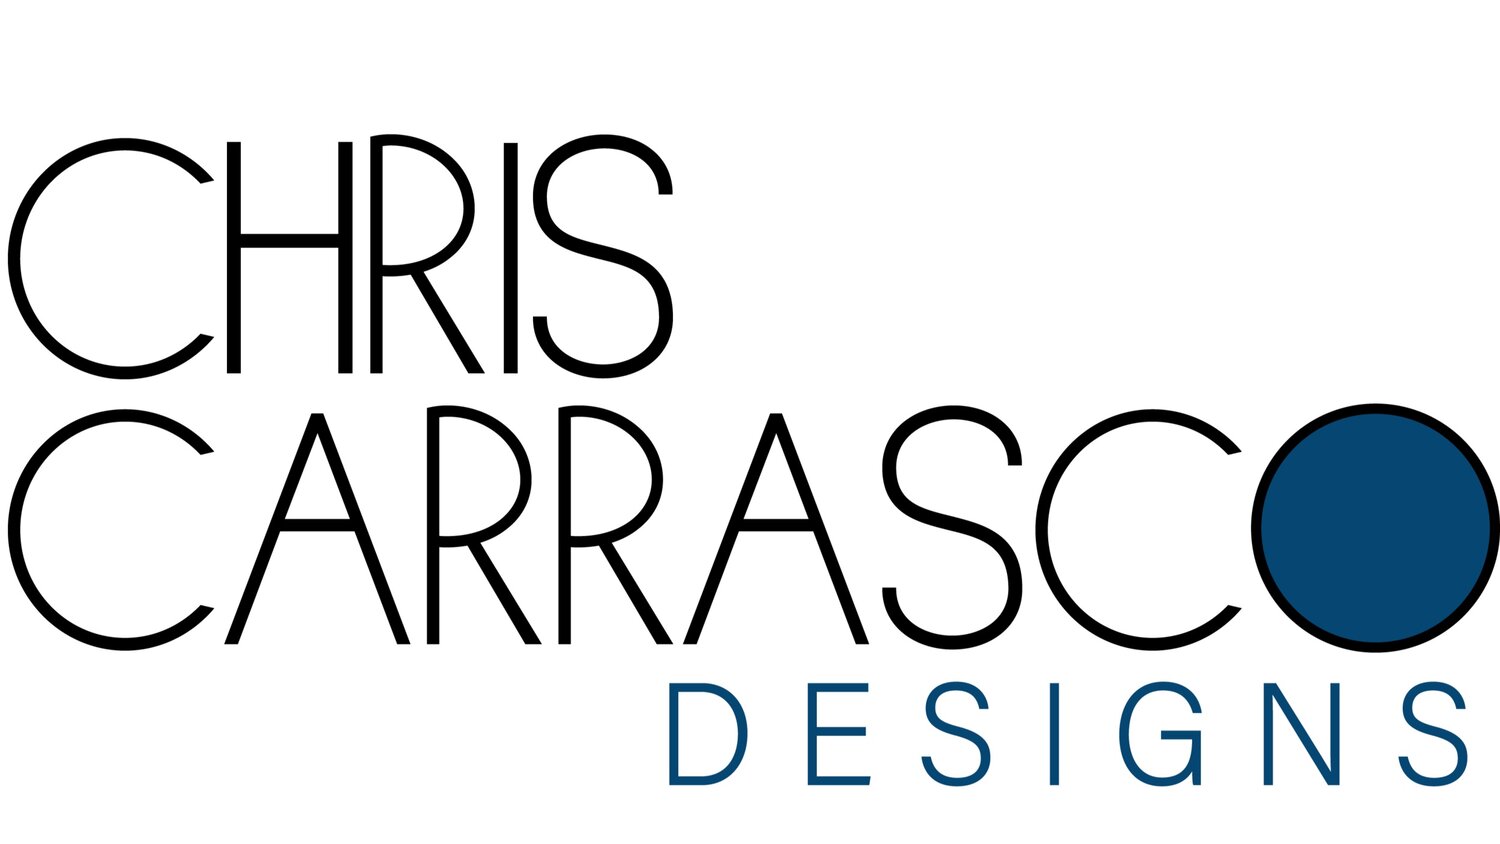 Chris Carrasco Designs